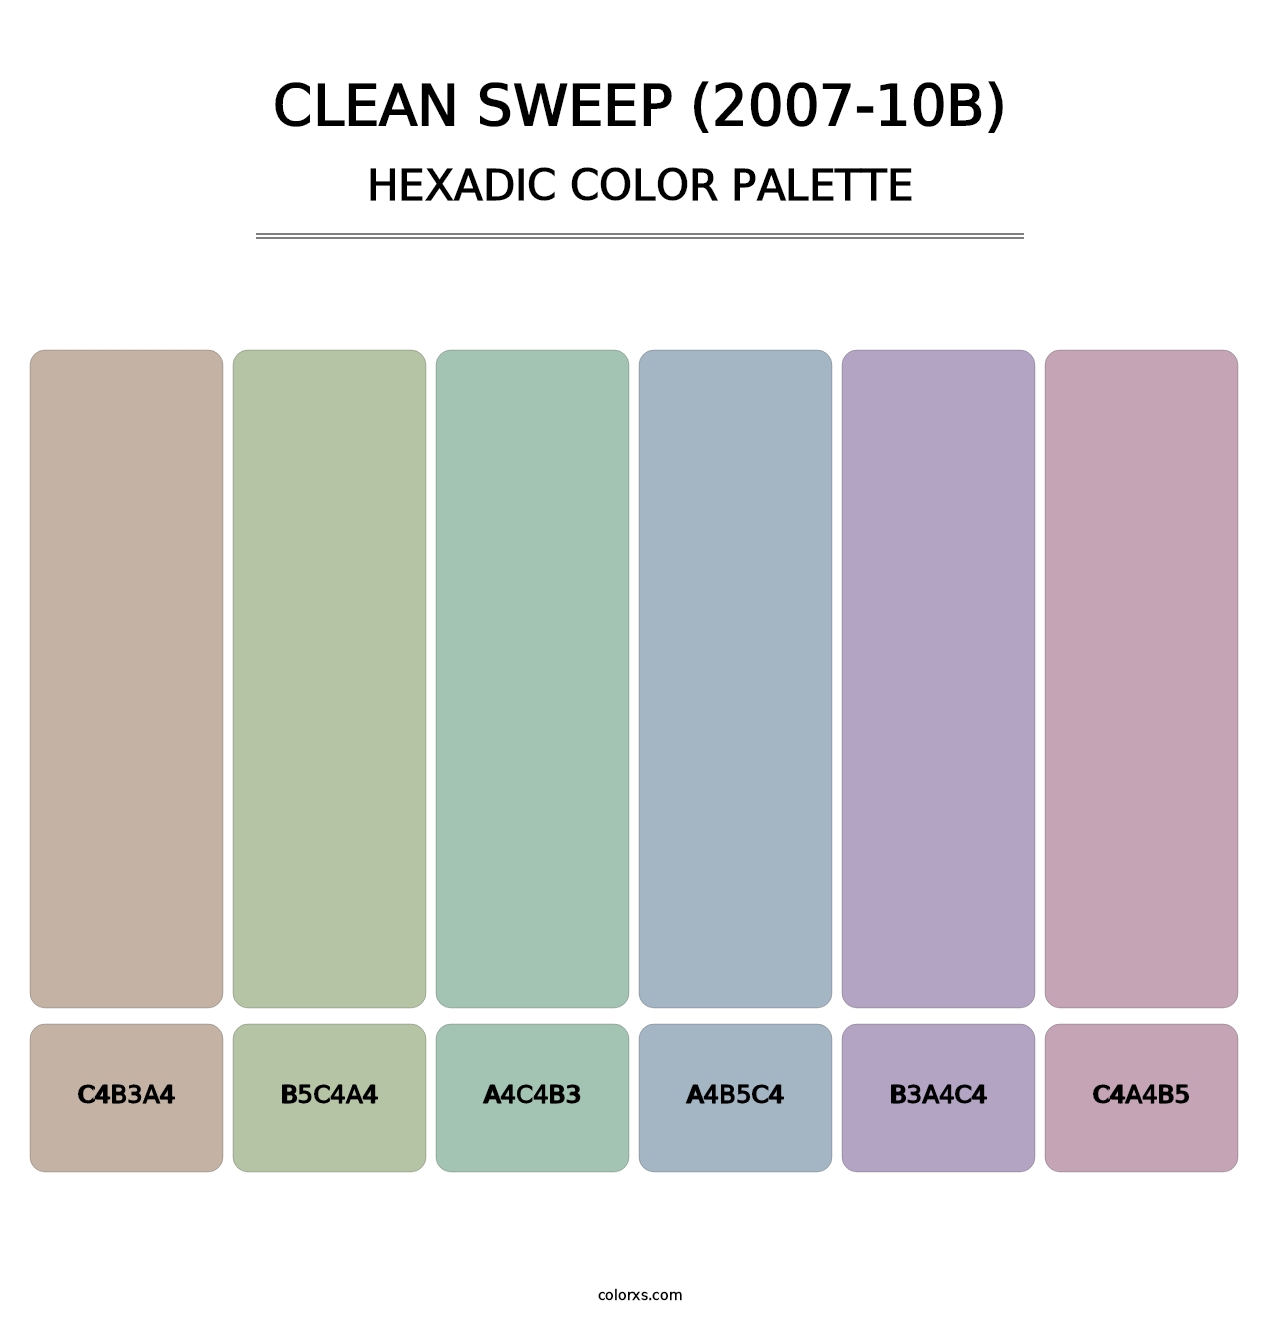 Clean Sweep (2007-10B) - Hexadic Color Palette